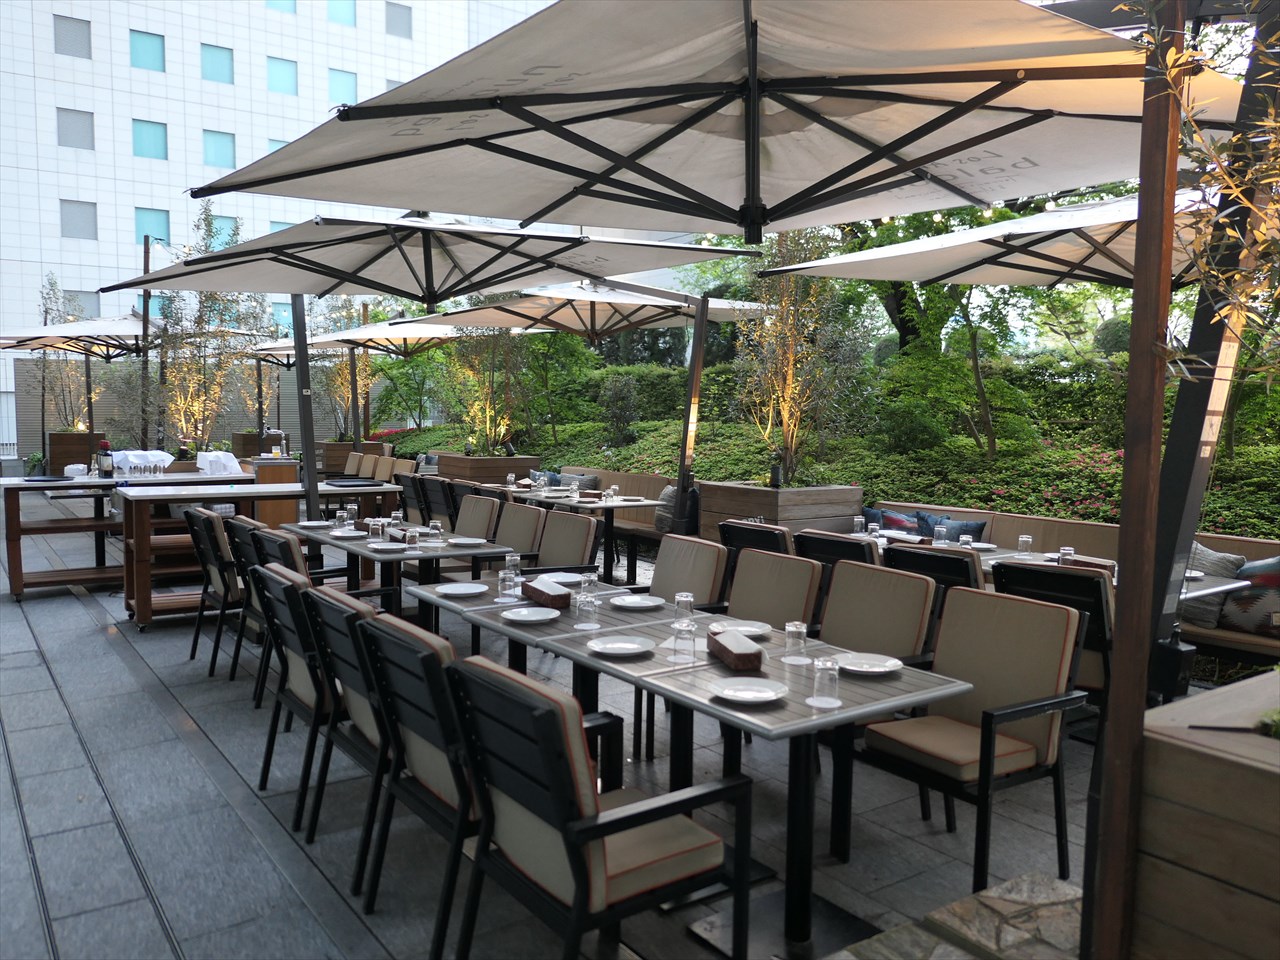 大人空間で贅沢な夜を過ごす ロサンジェルス バルコニー テラス レストラン ムーンバー 東京ビアガーデン情報館 22年版 人気の都内ビアガーデン ビアテラスを探そう